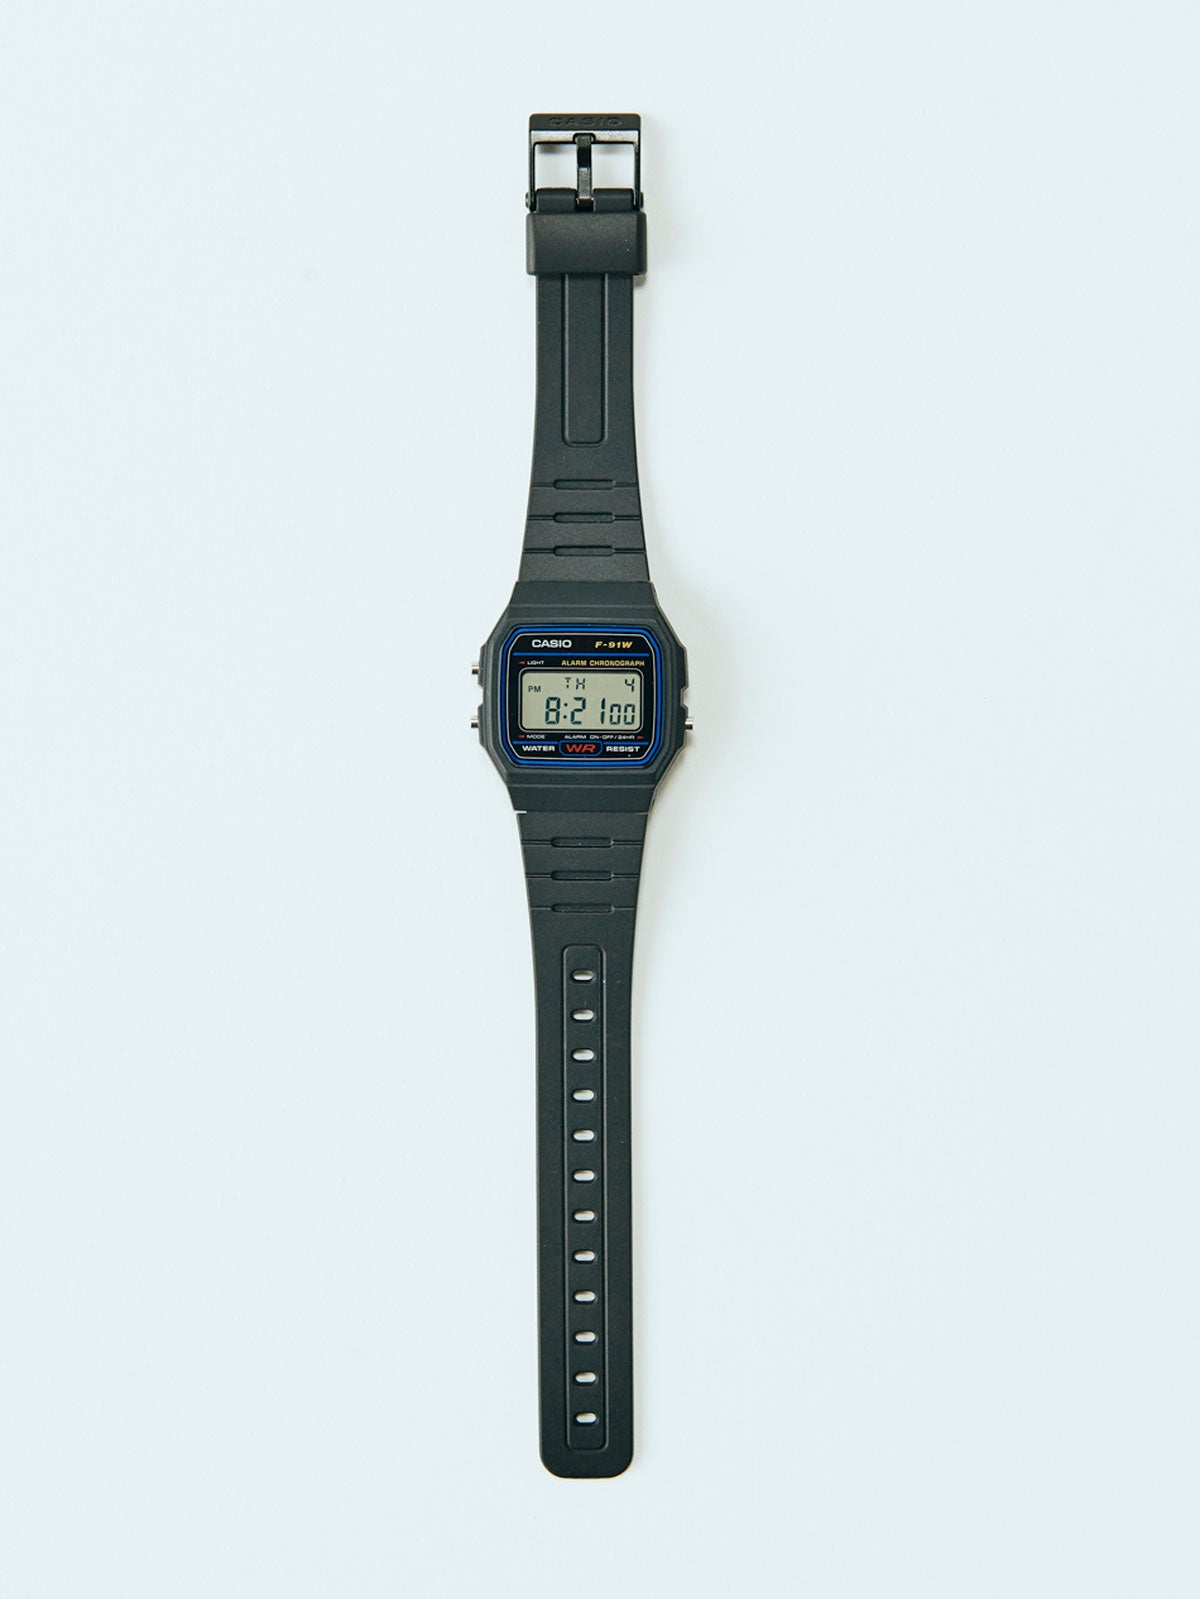 世界で最も売れてる腕時計のひとつ!? 2,200円の「カシオ F-91W-1JH」は